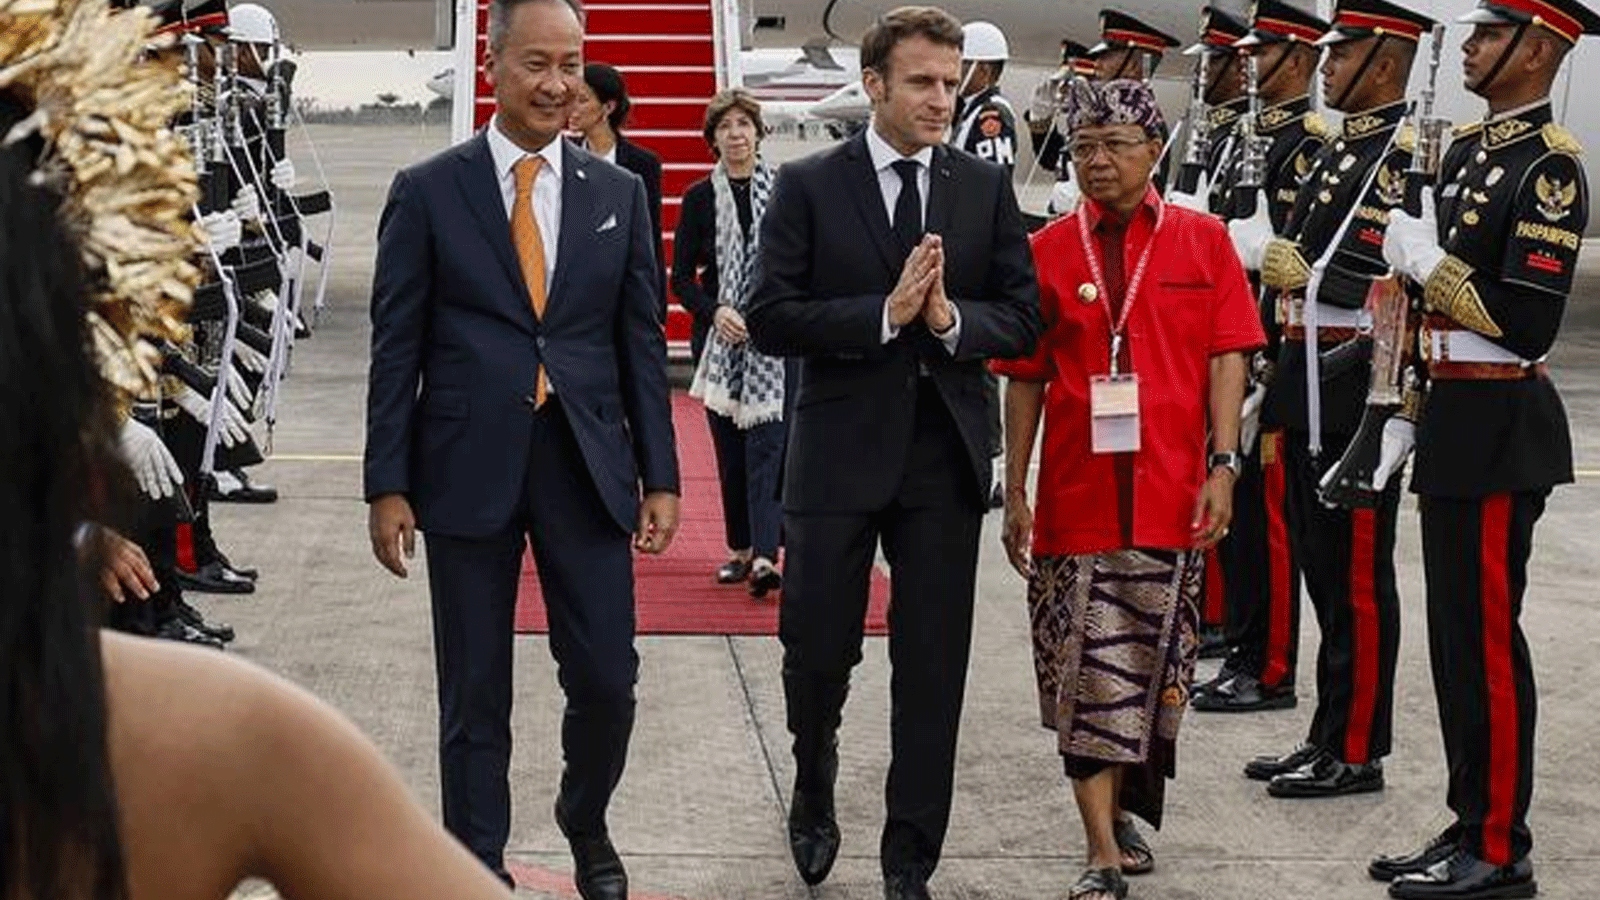 الرئيس الفرنسي إيمانويل ماكرون يصل لحضور قمة مجموعة العشرين في مطار نجوراه راي الدولي في دينباسار في منتجع جزيرة بالي الإندونيسية. 14تشرين الثاني\ نوفمبر 2022